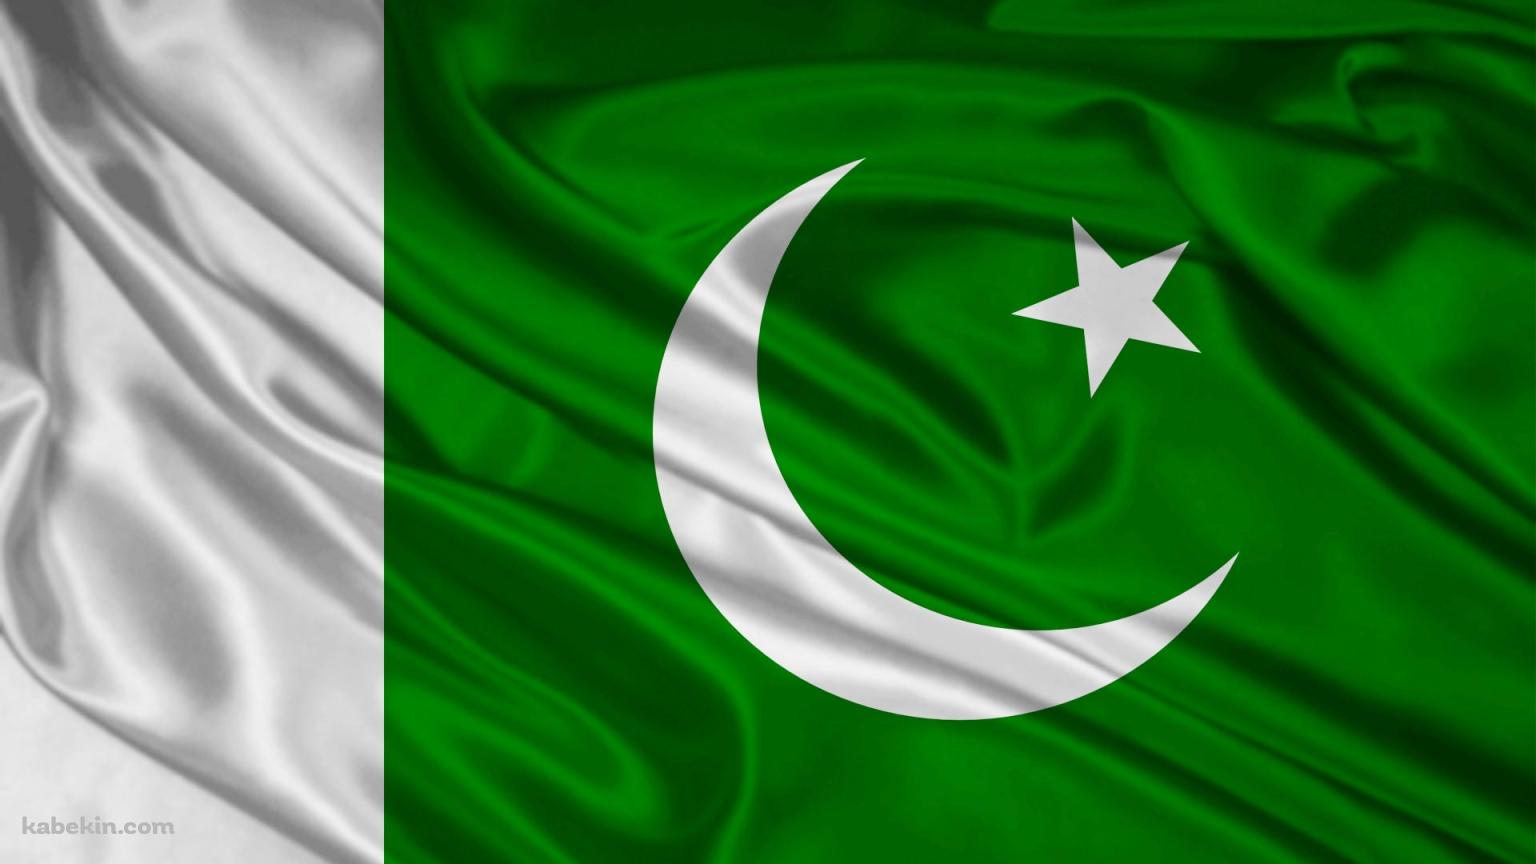 パキスタンの国旗 pakistan flagの壁紙(1536px x 864px) 高画質 PC・デスクトップ用